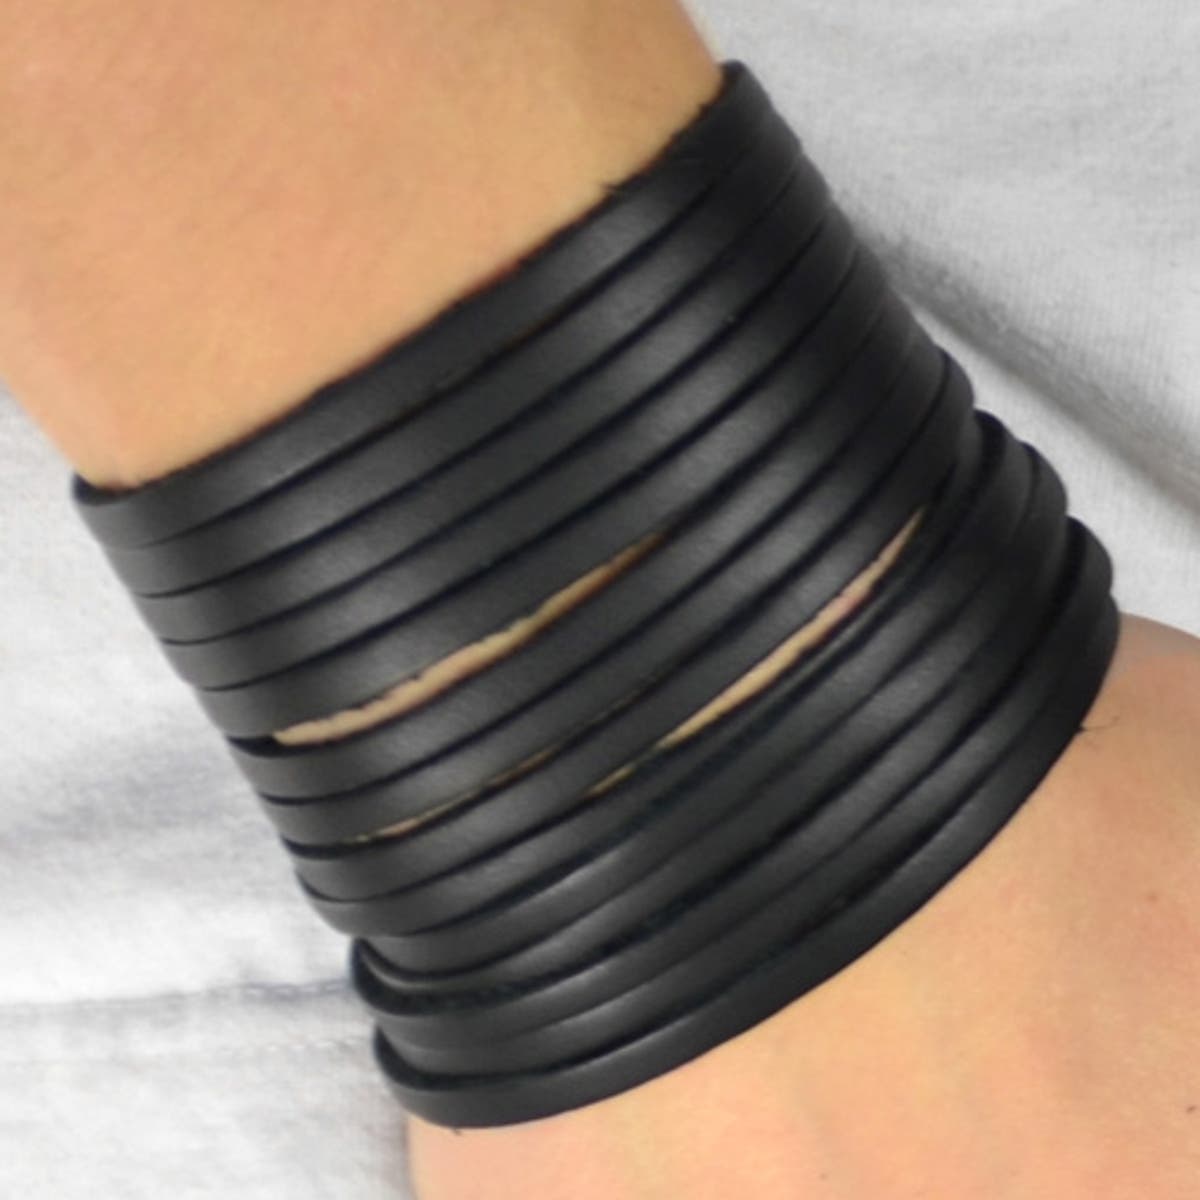 leather bracelet for